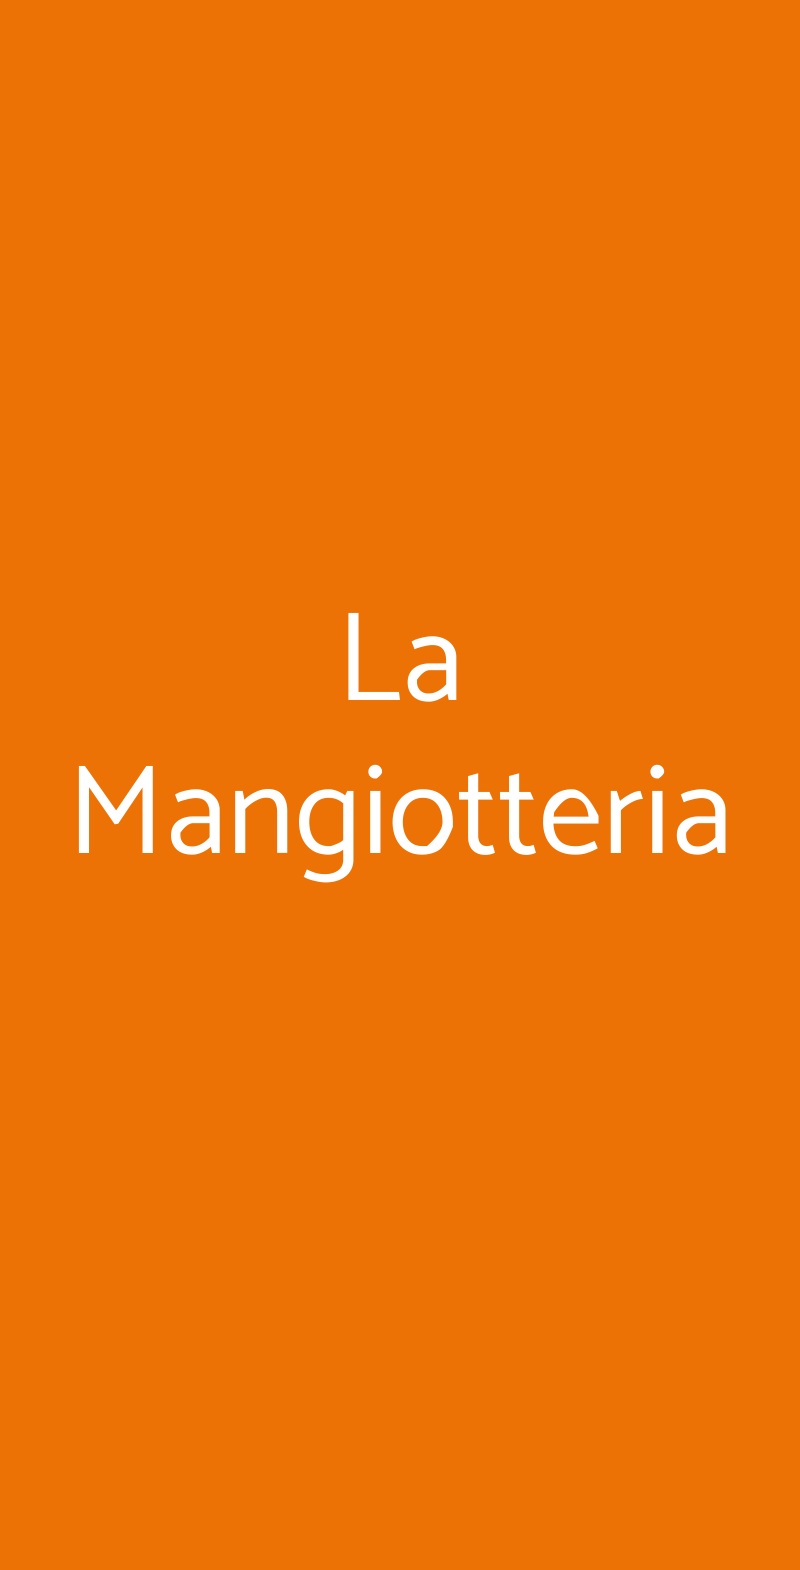 La Mangiotteria Milano menù 1 pagina